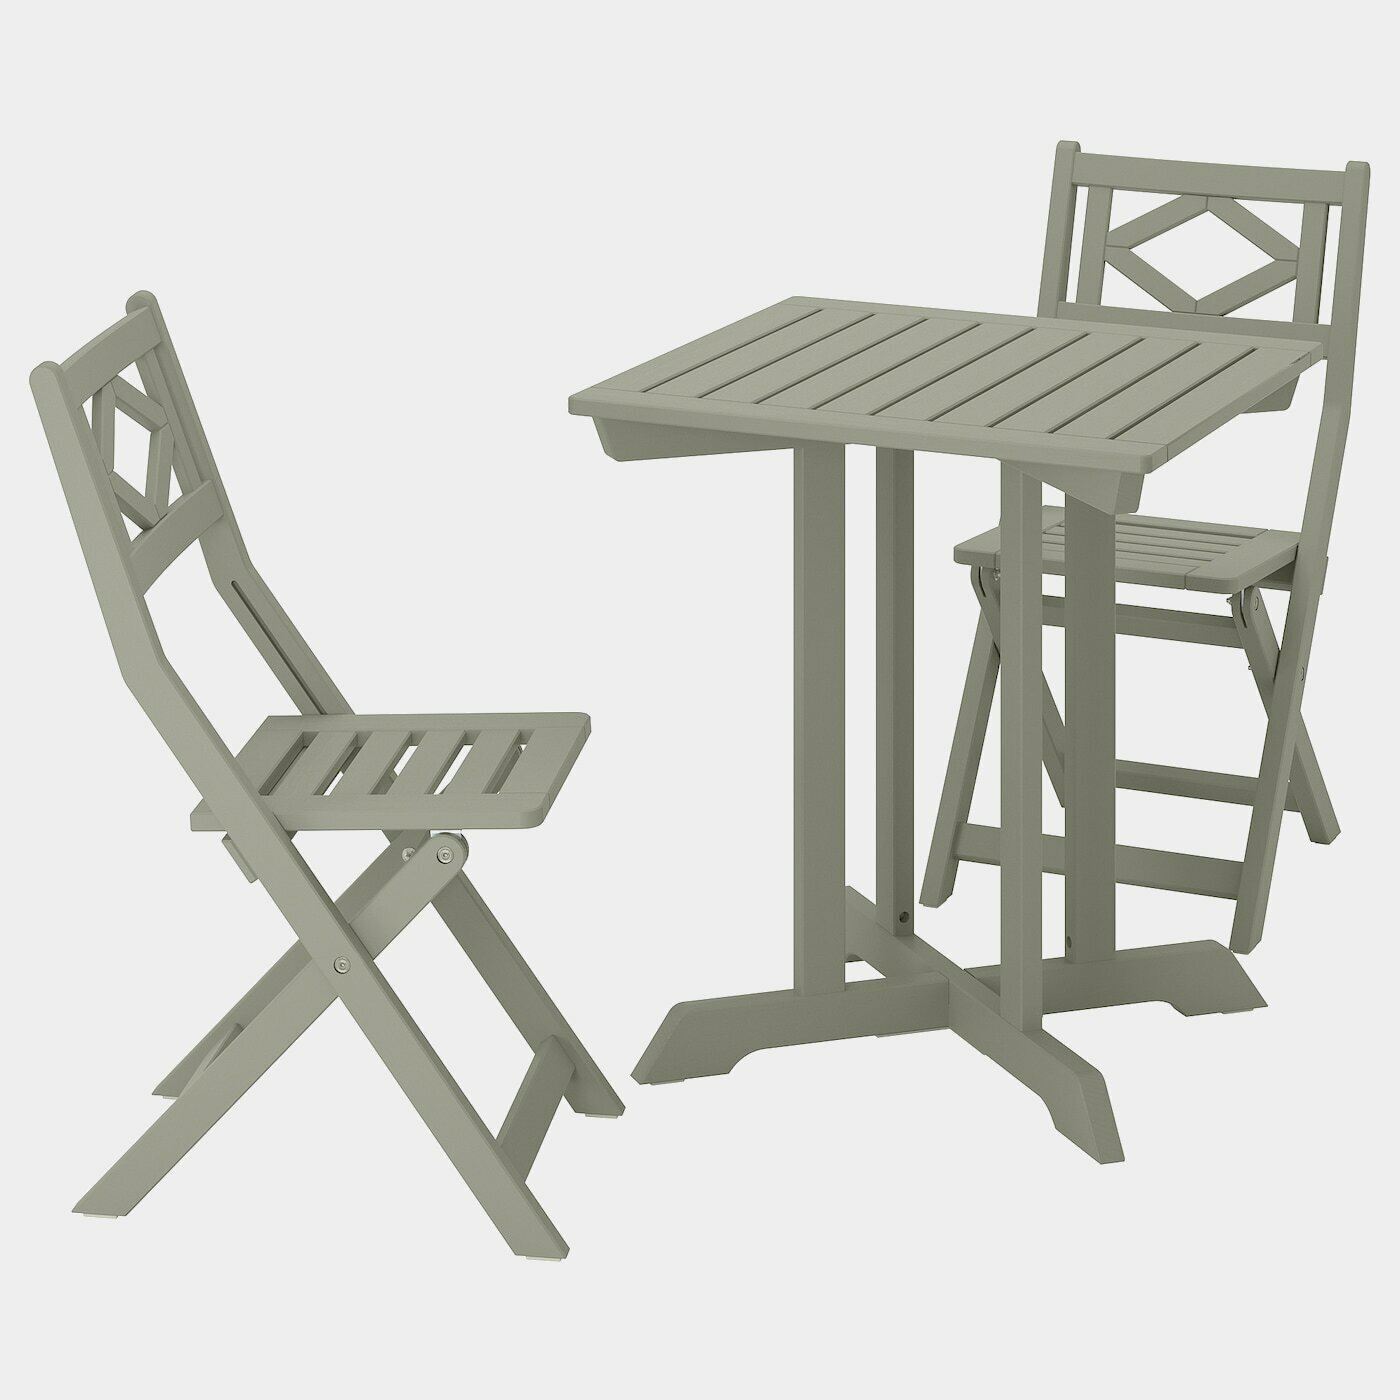 BONDHOLMEN Tisch+2 Klappstühle/außen  -  - Möbel Ideen für dein Zuhause von Home Trends. Möbel Trends von Social Media Influencer für dein Skandi Zuhause.